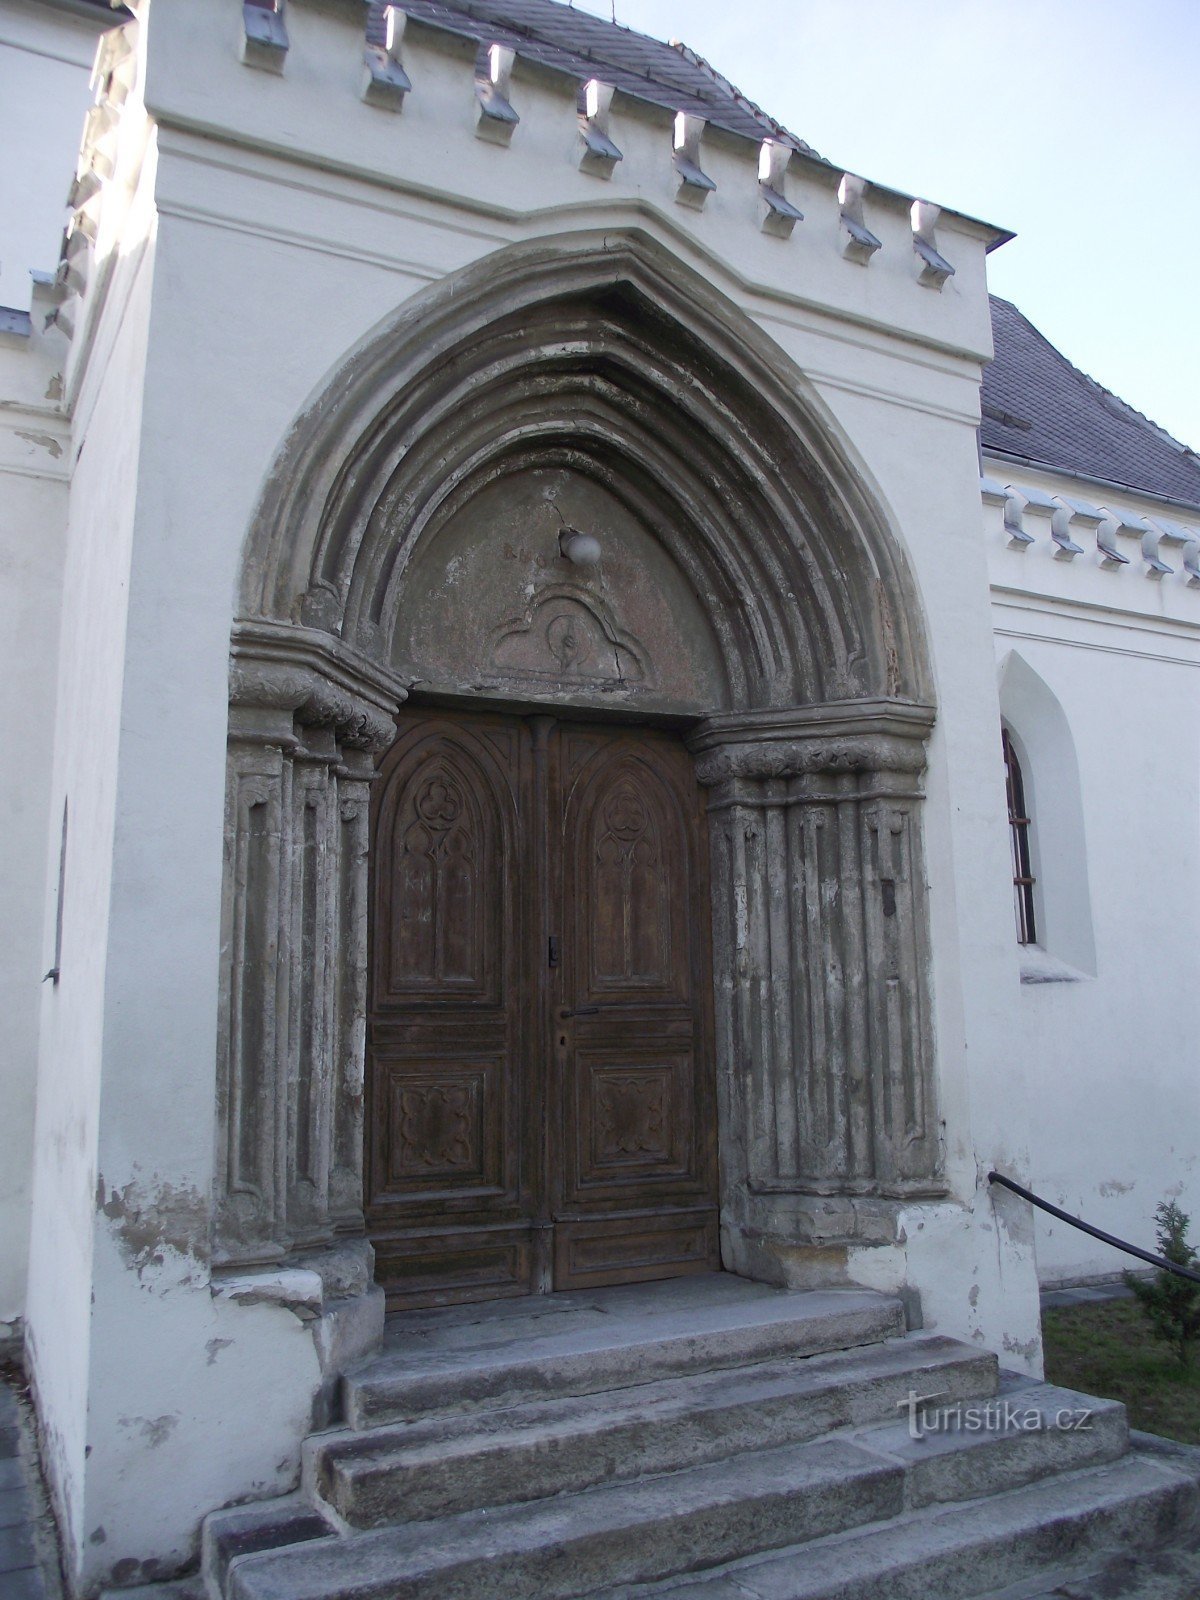 Romansk-gotisk portal